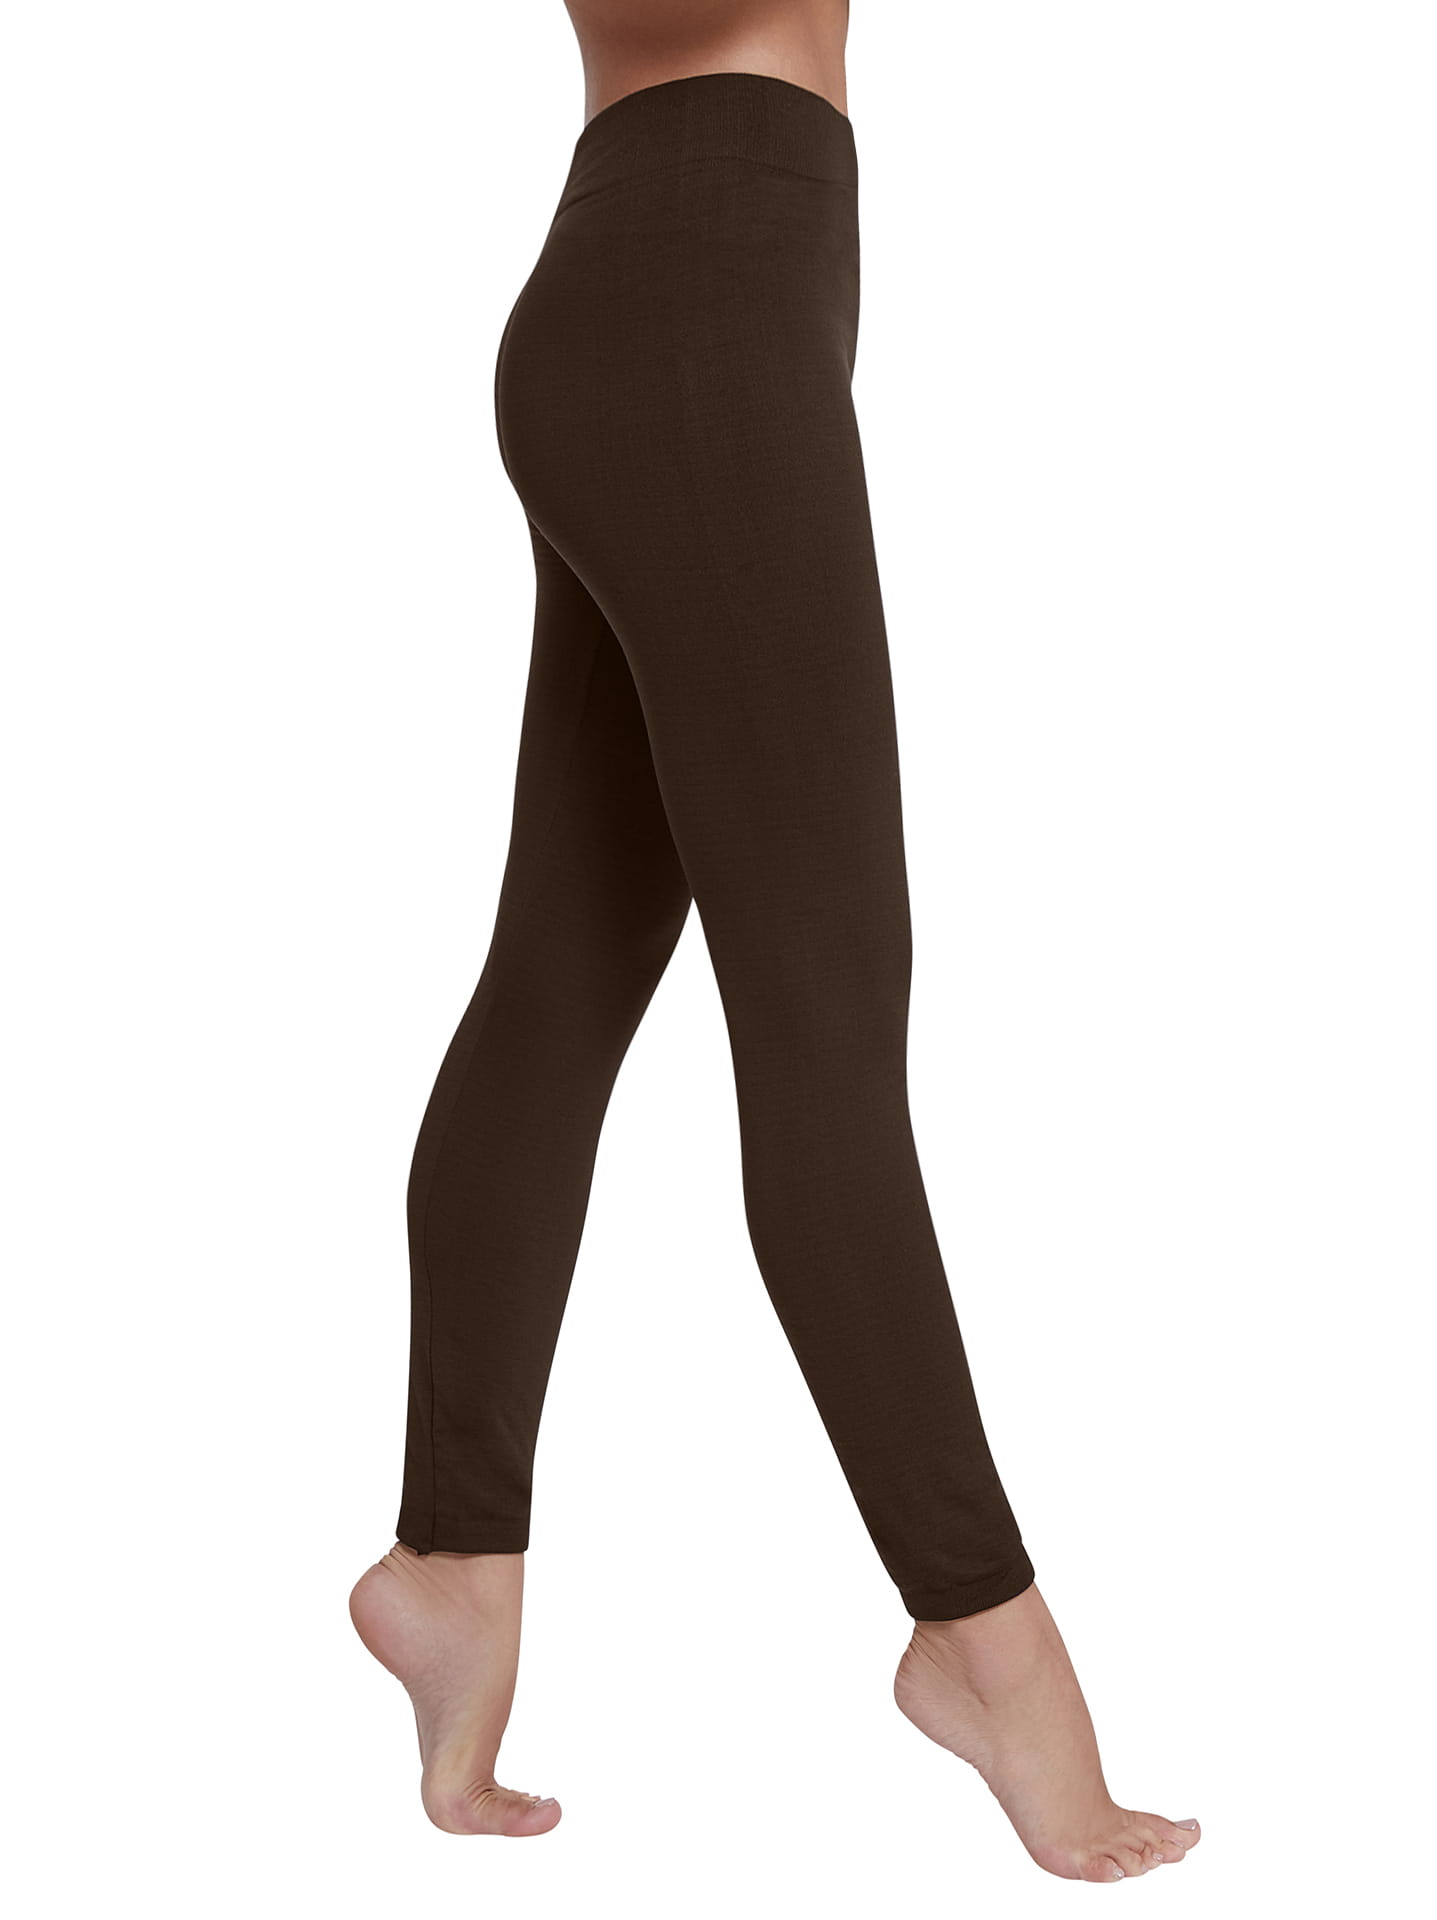 Elastic thermal leggings in dark brown, 6.99€